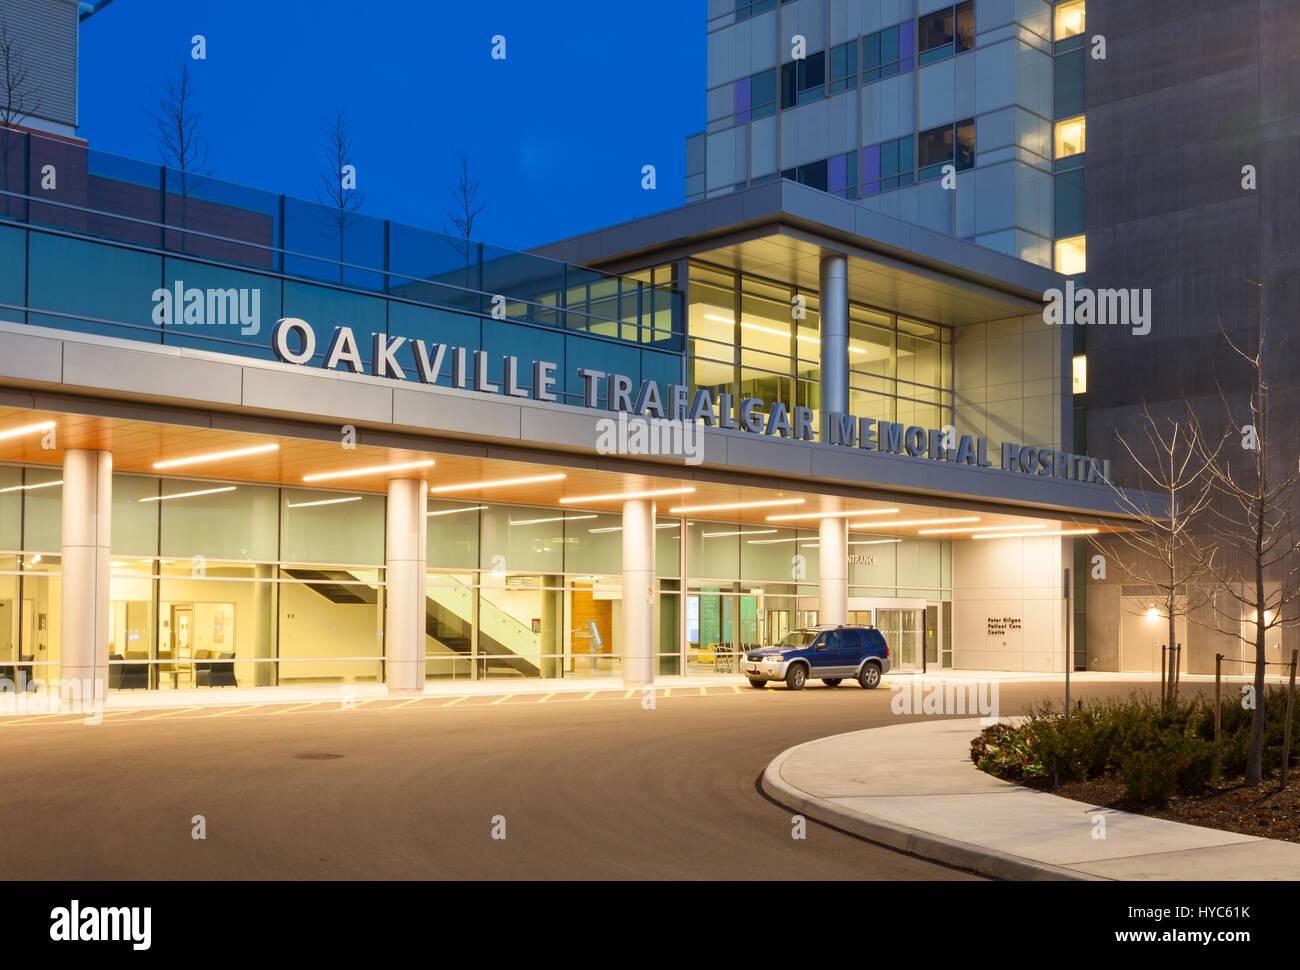 The main entrance to the Oakville Trafalgar Memorial Hospital in Oakville, Ontario, Canada. Stock Photo